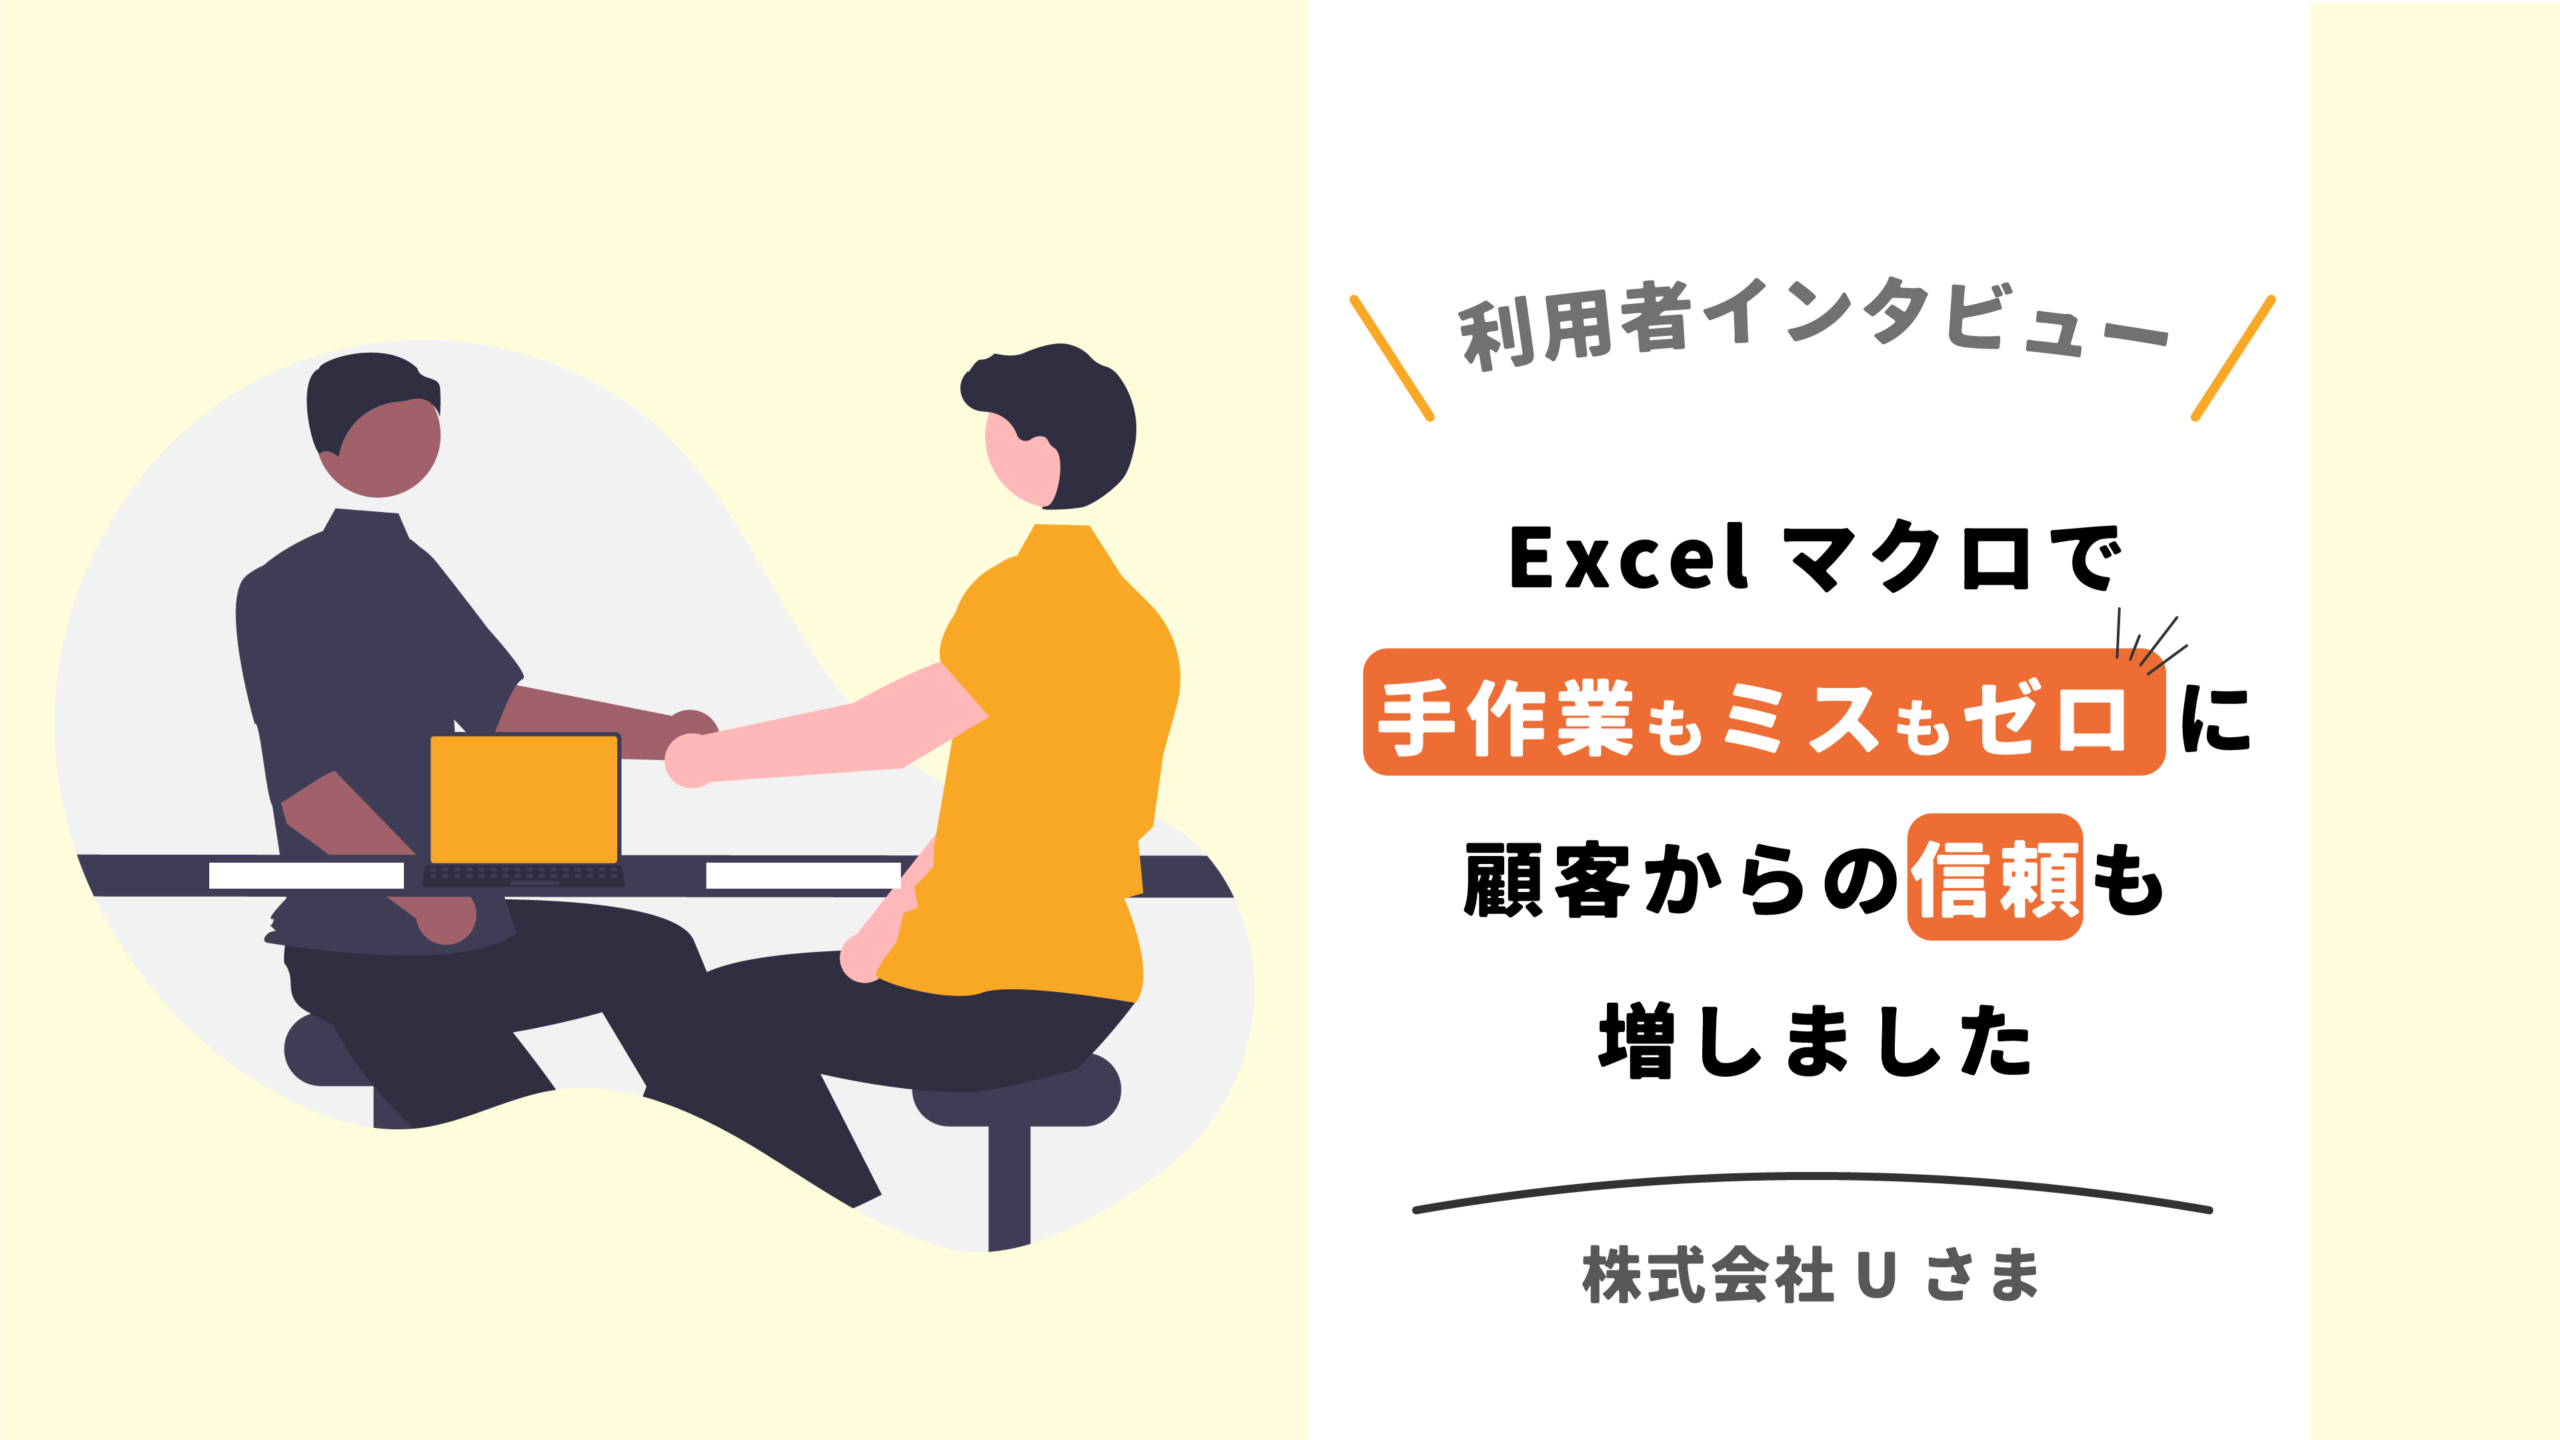 Excelマクロで手作業もミスもゼロに。顧客からの信頼も増しました！